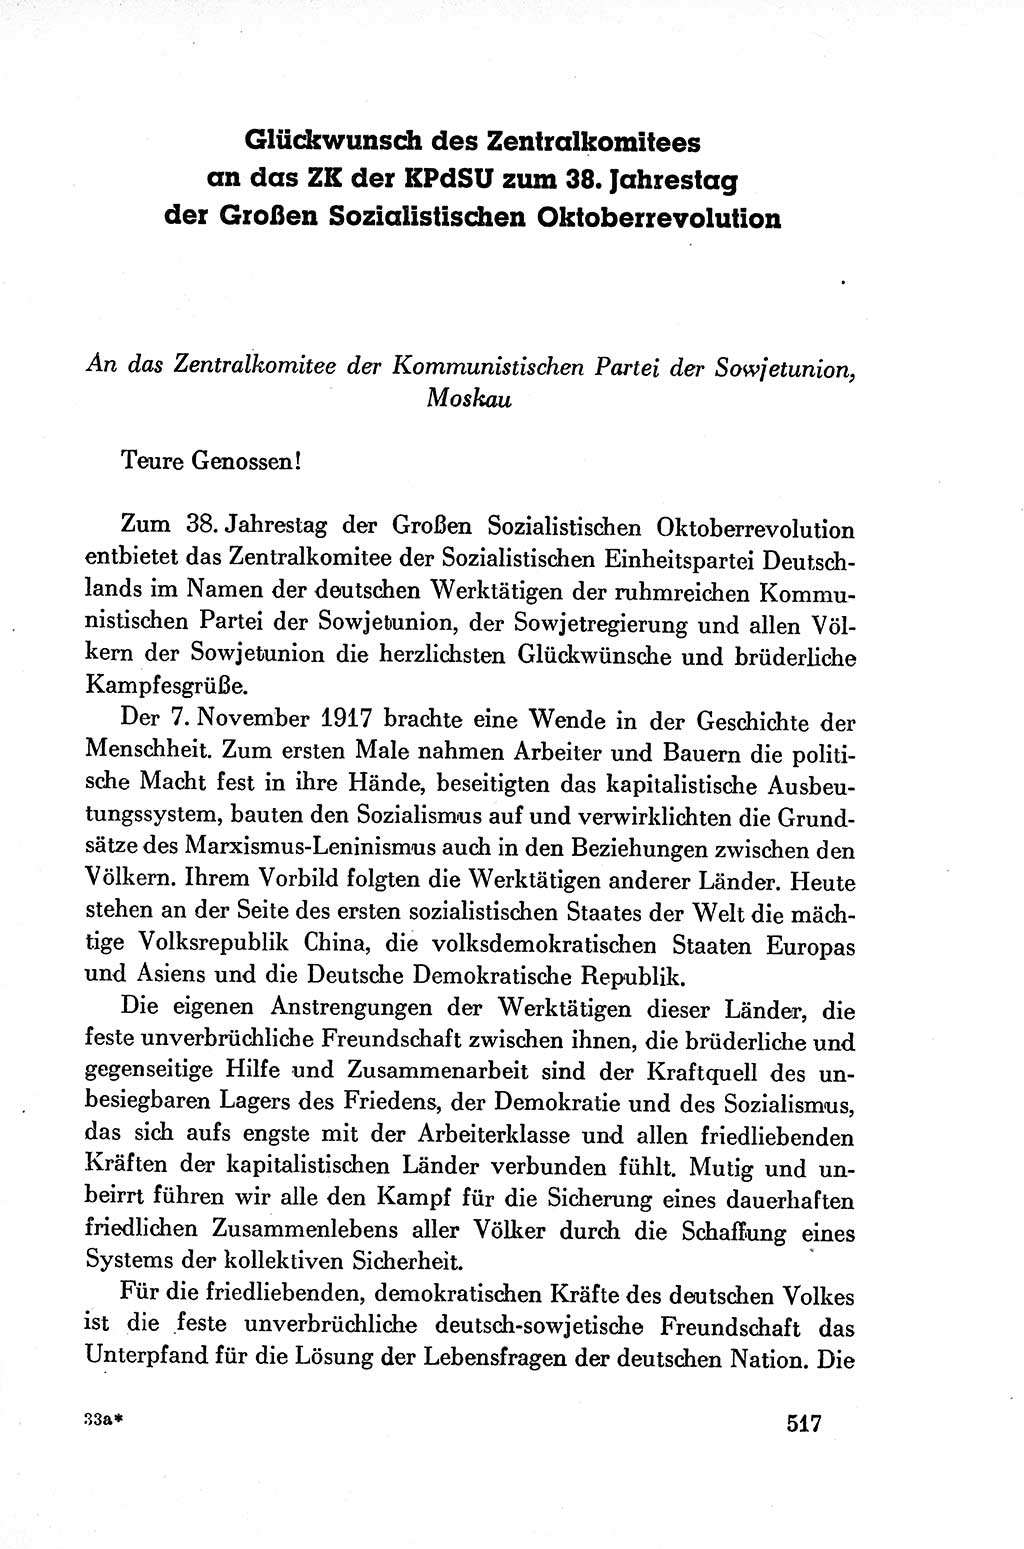 Dokumente der Sozialistischen Einheitspartei Deutschlands (SED) [Deutsche Demokratische Republik (DDR)] 1954-1955, Seite 517 (Dok. SED DDR 1954-1955, S. 517)